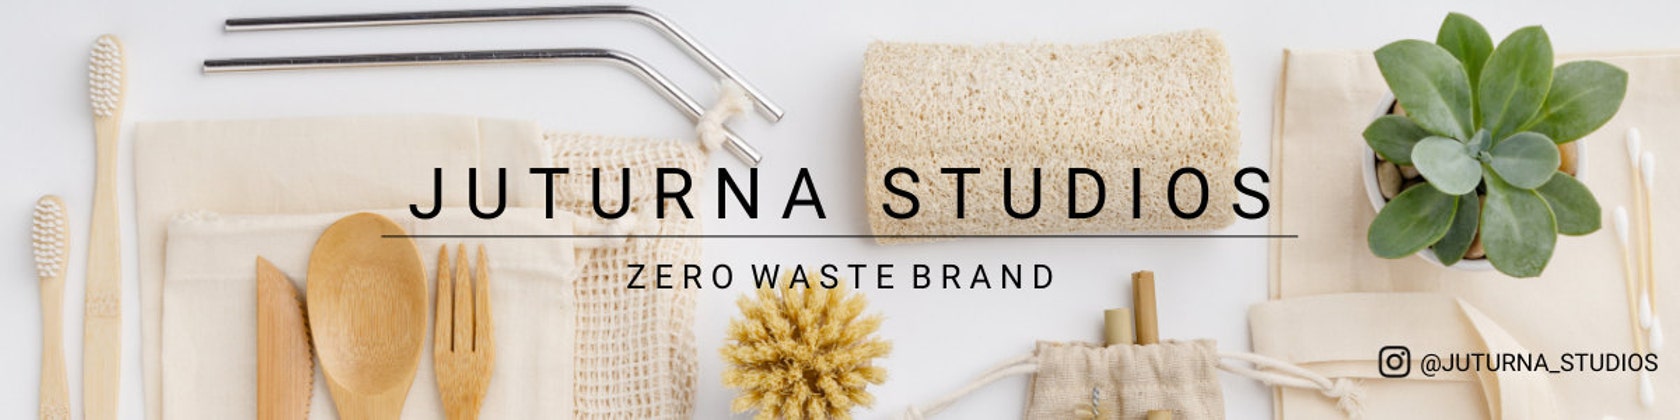 Long Dish Cleaning Scrub Brush Zero Waste Plastic-Free Juturna